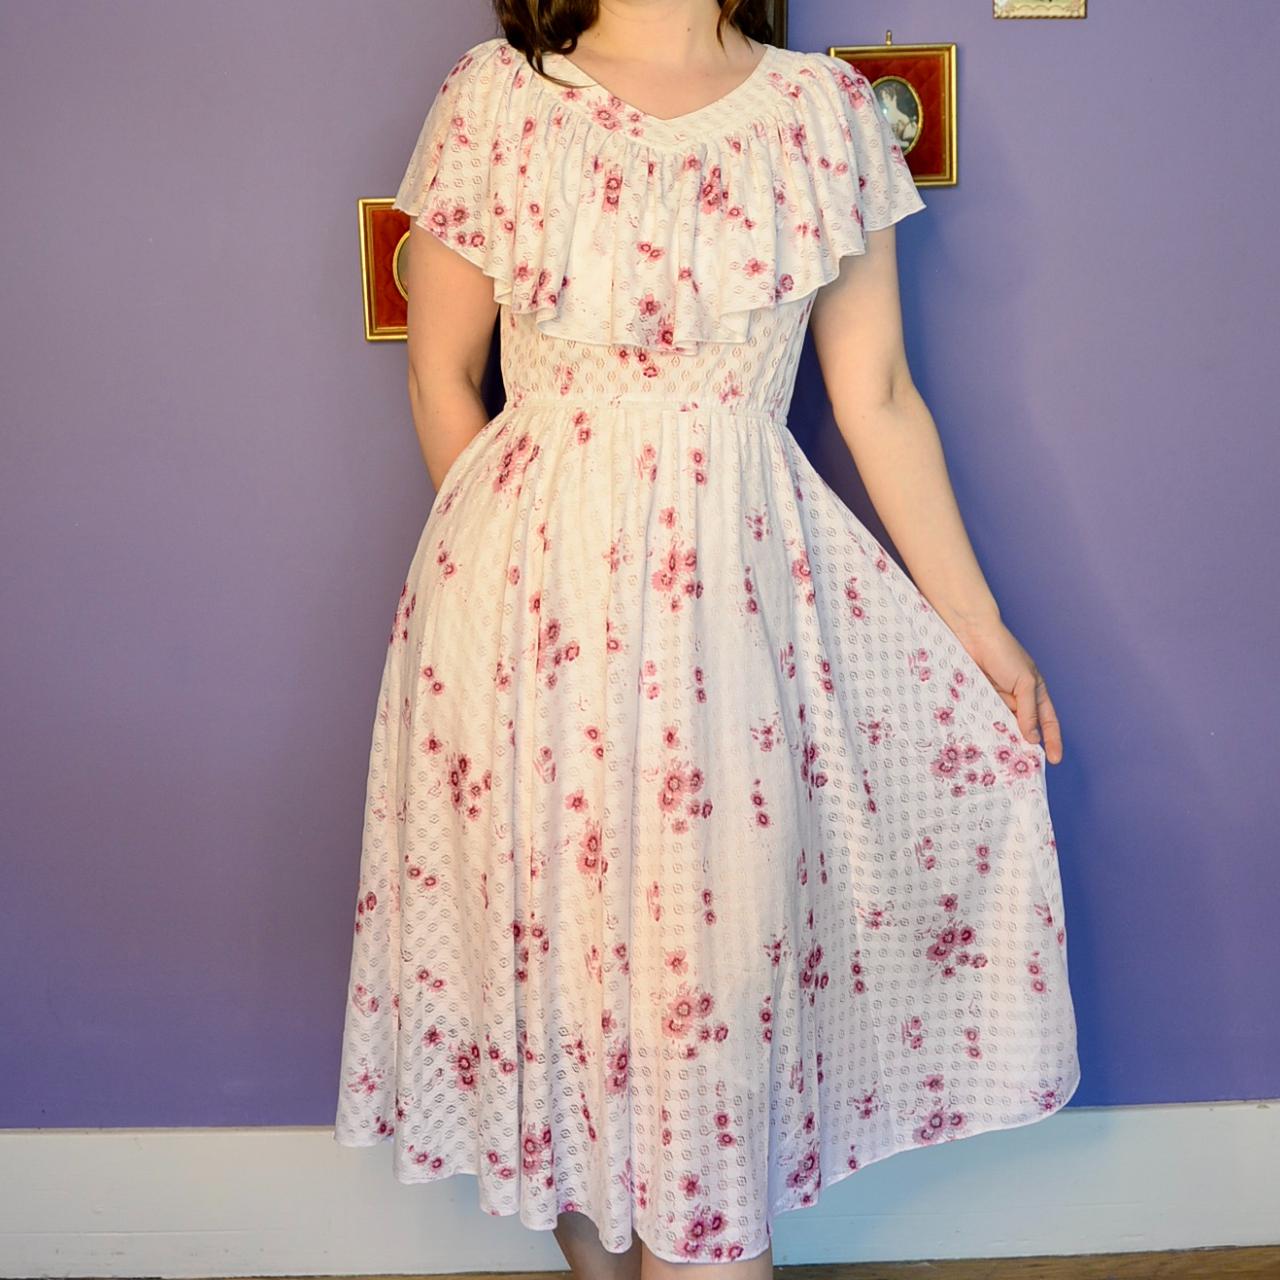 This 70's vintage prairie dress is one of my... - Depop